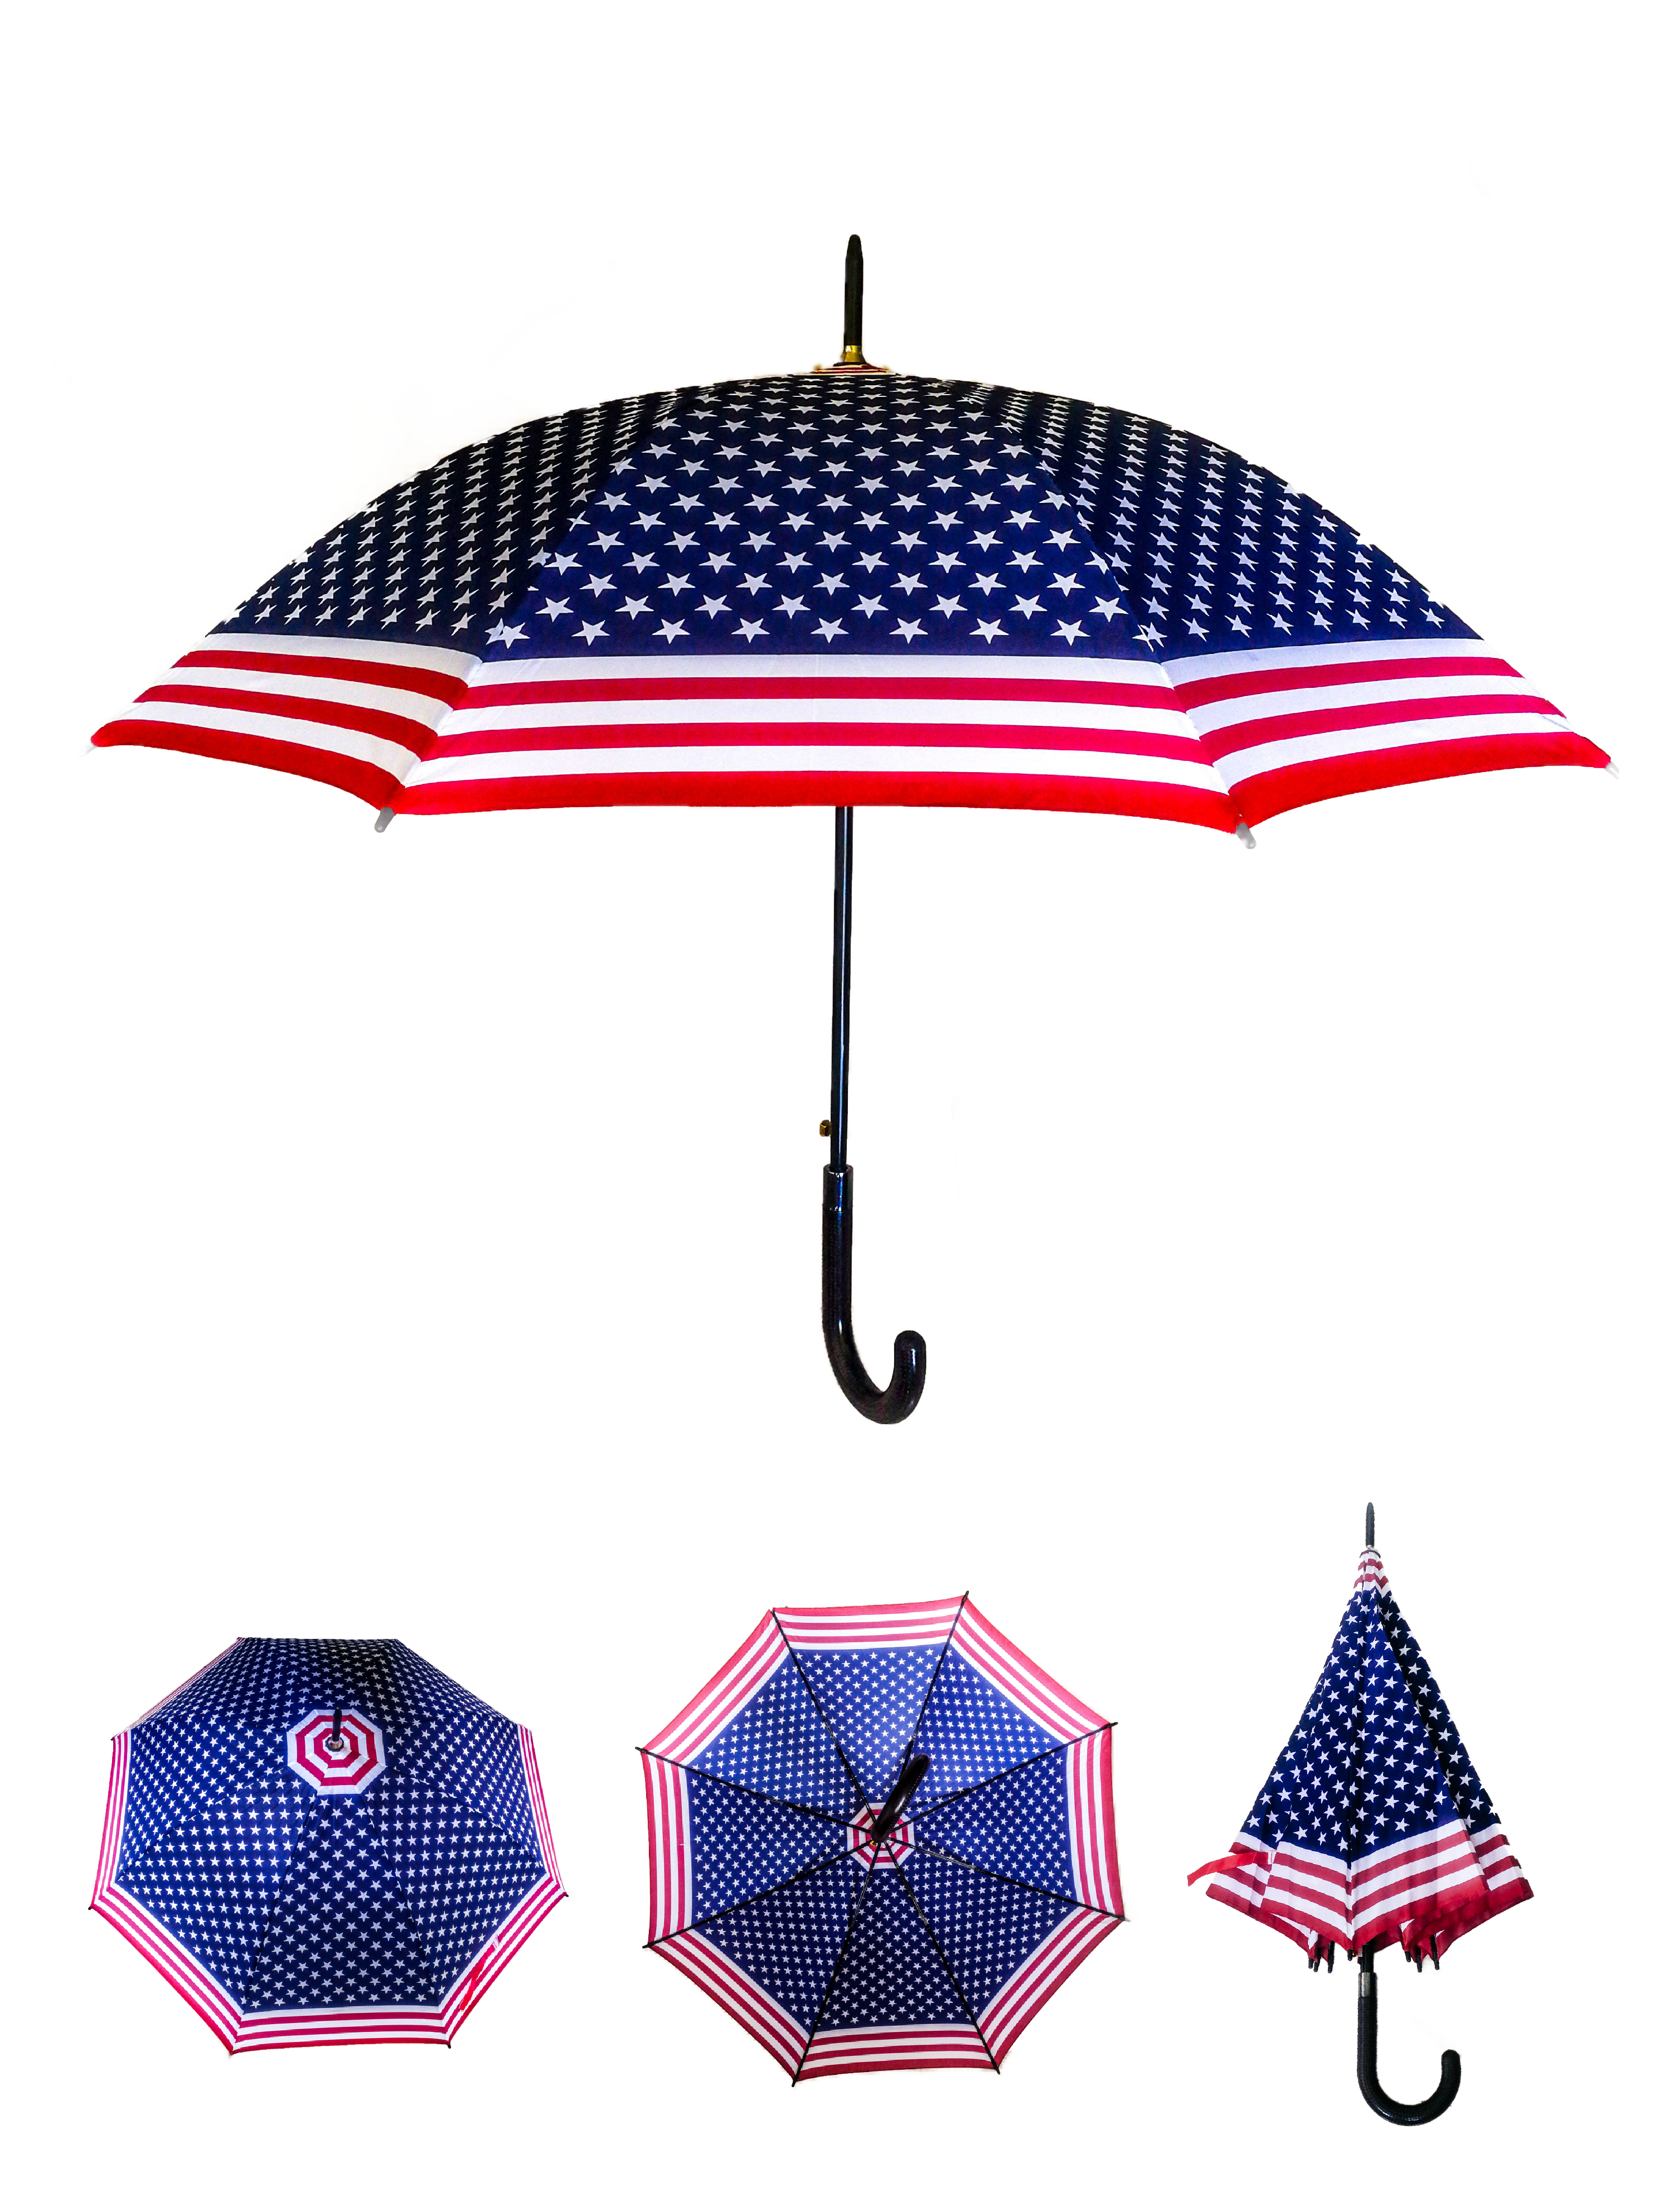 LOT DE 12 - Parapluie long drapeau USA 3,90€/unité | Grossiste-pro